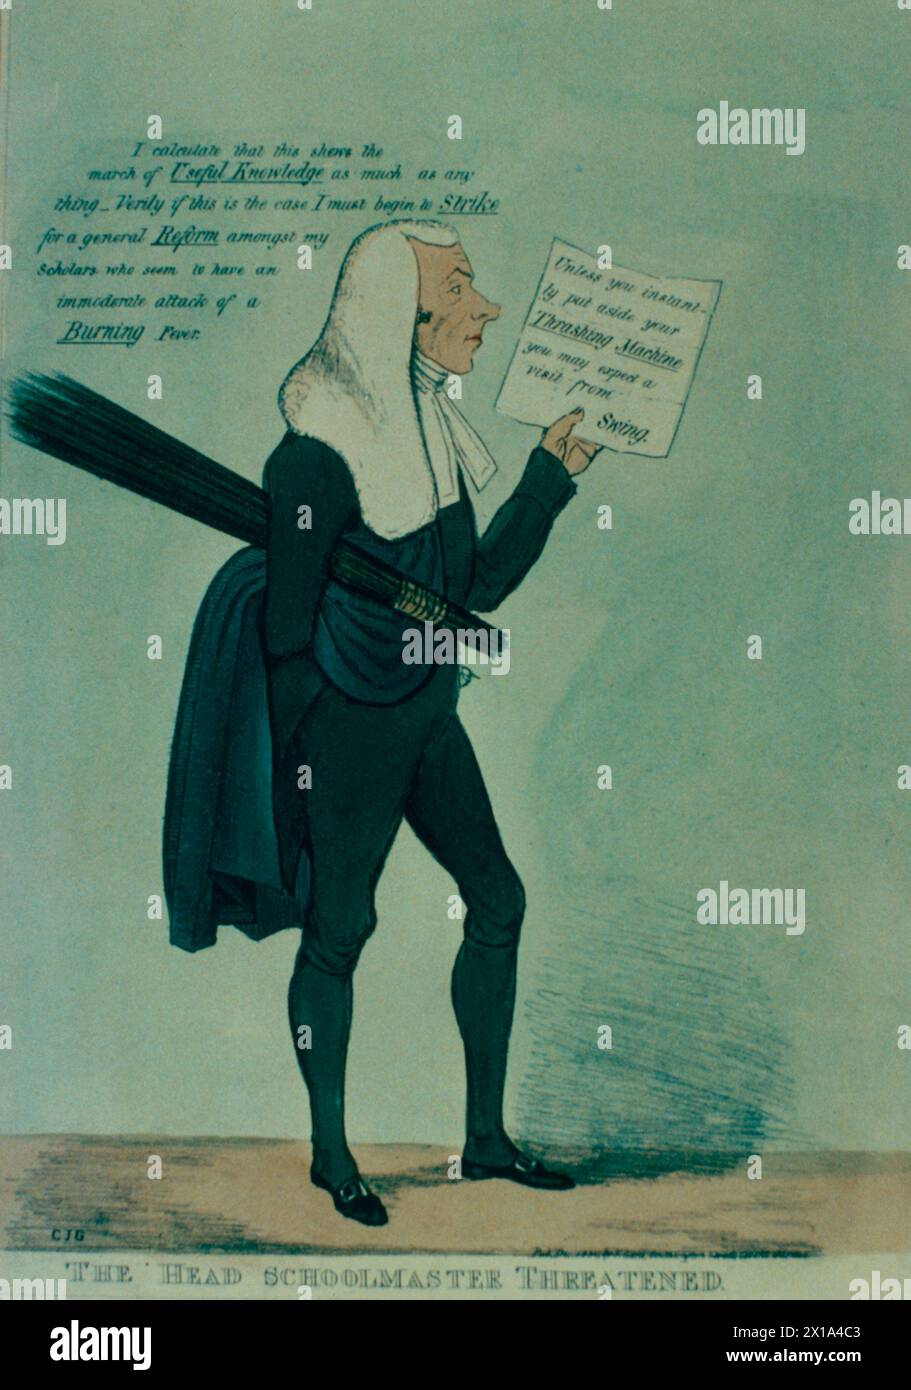 Chef d'école menacé, caricature britannique sur les révoltes agricoles de 1830, illustration, XIXe siècle Banque D'Images